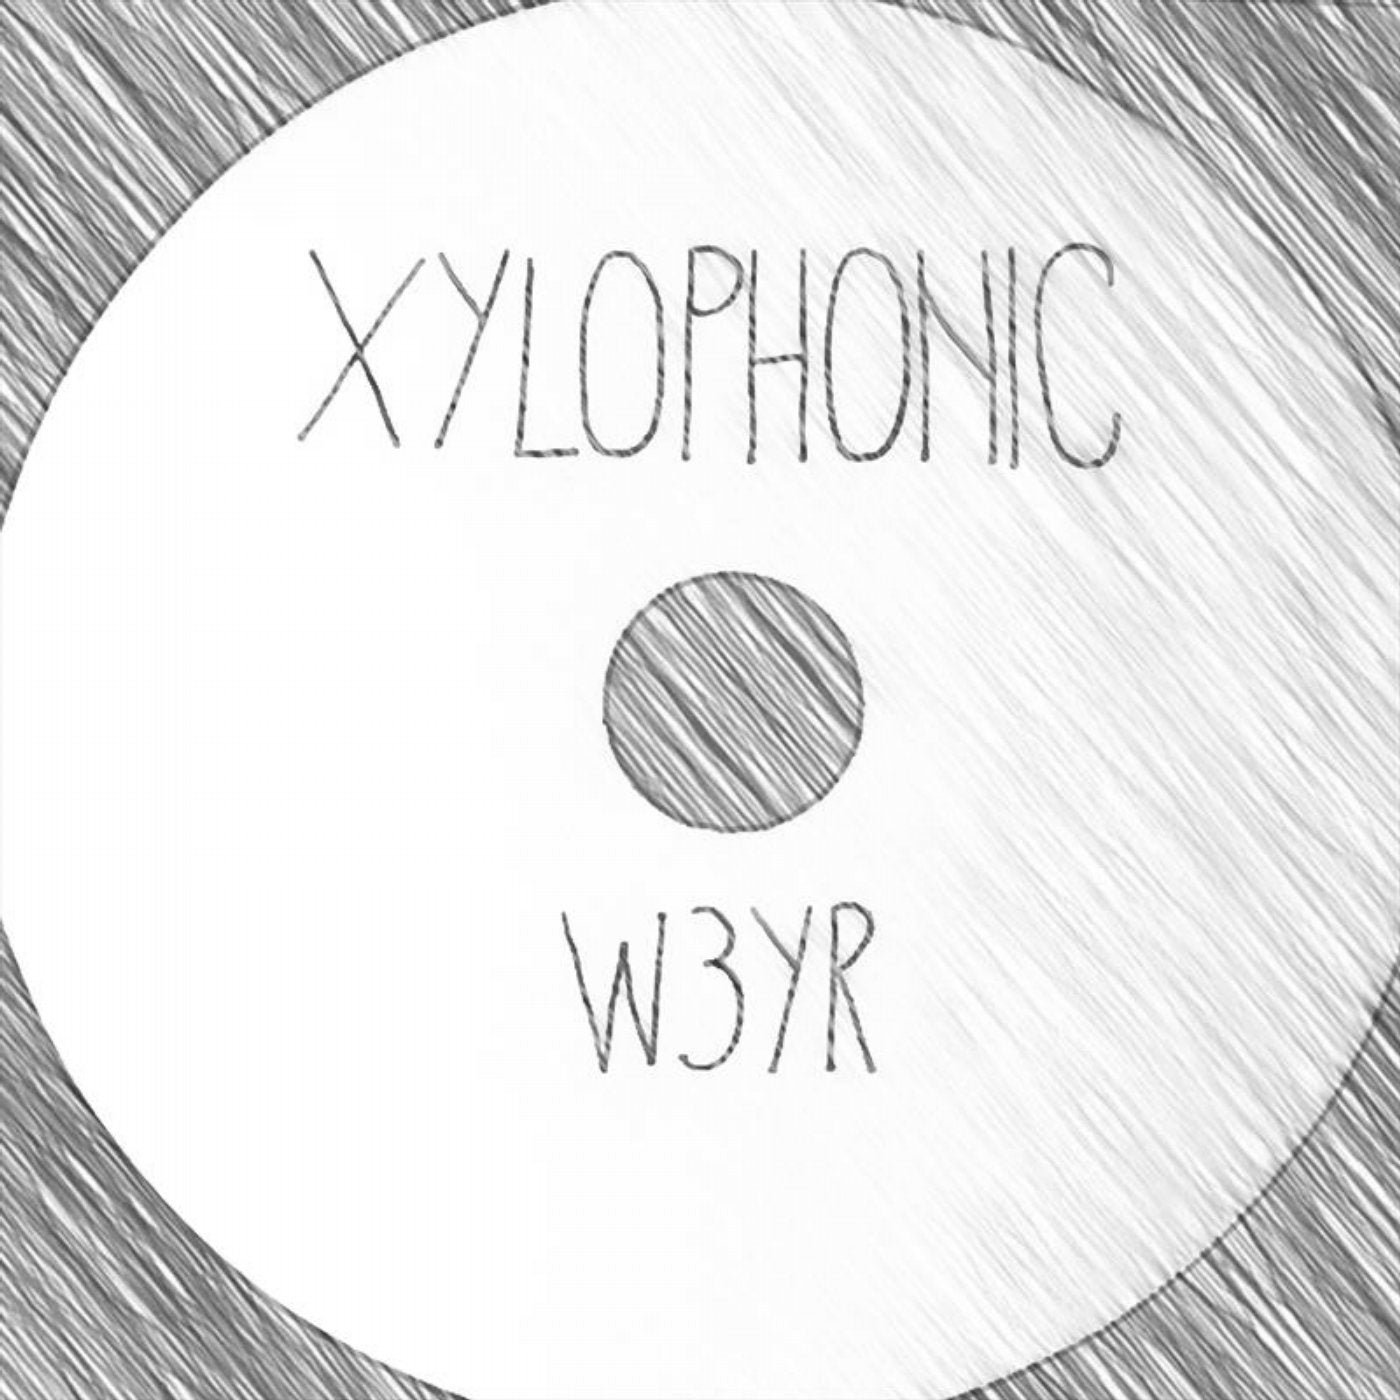 xylophonic